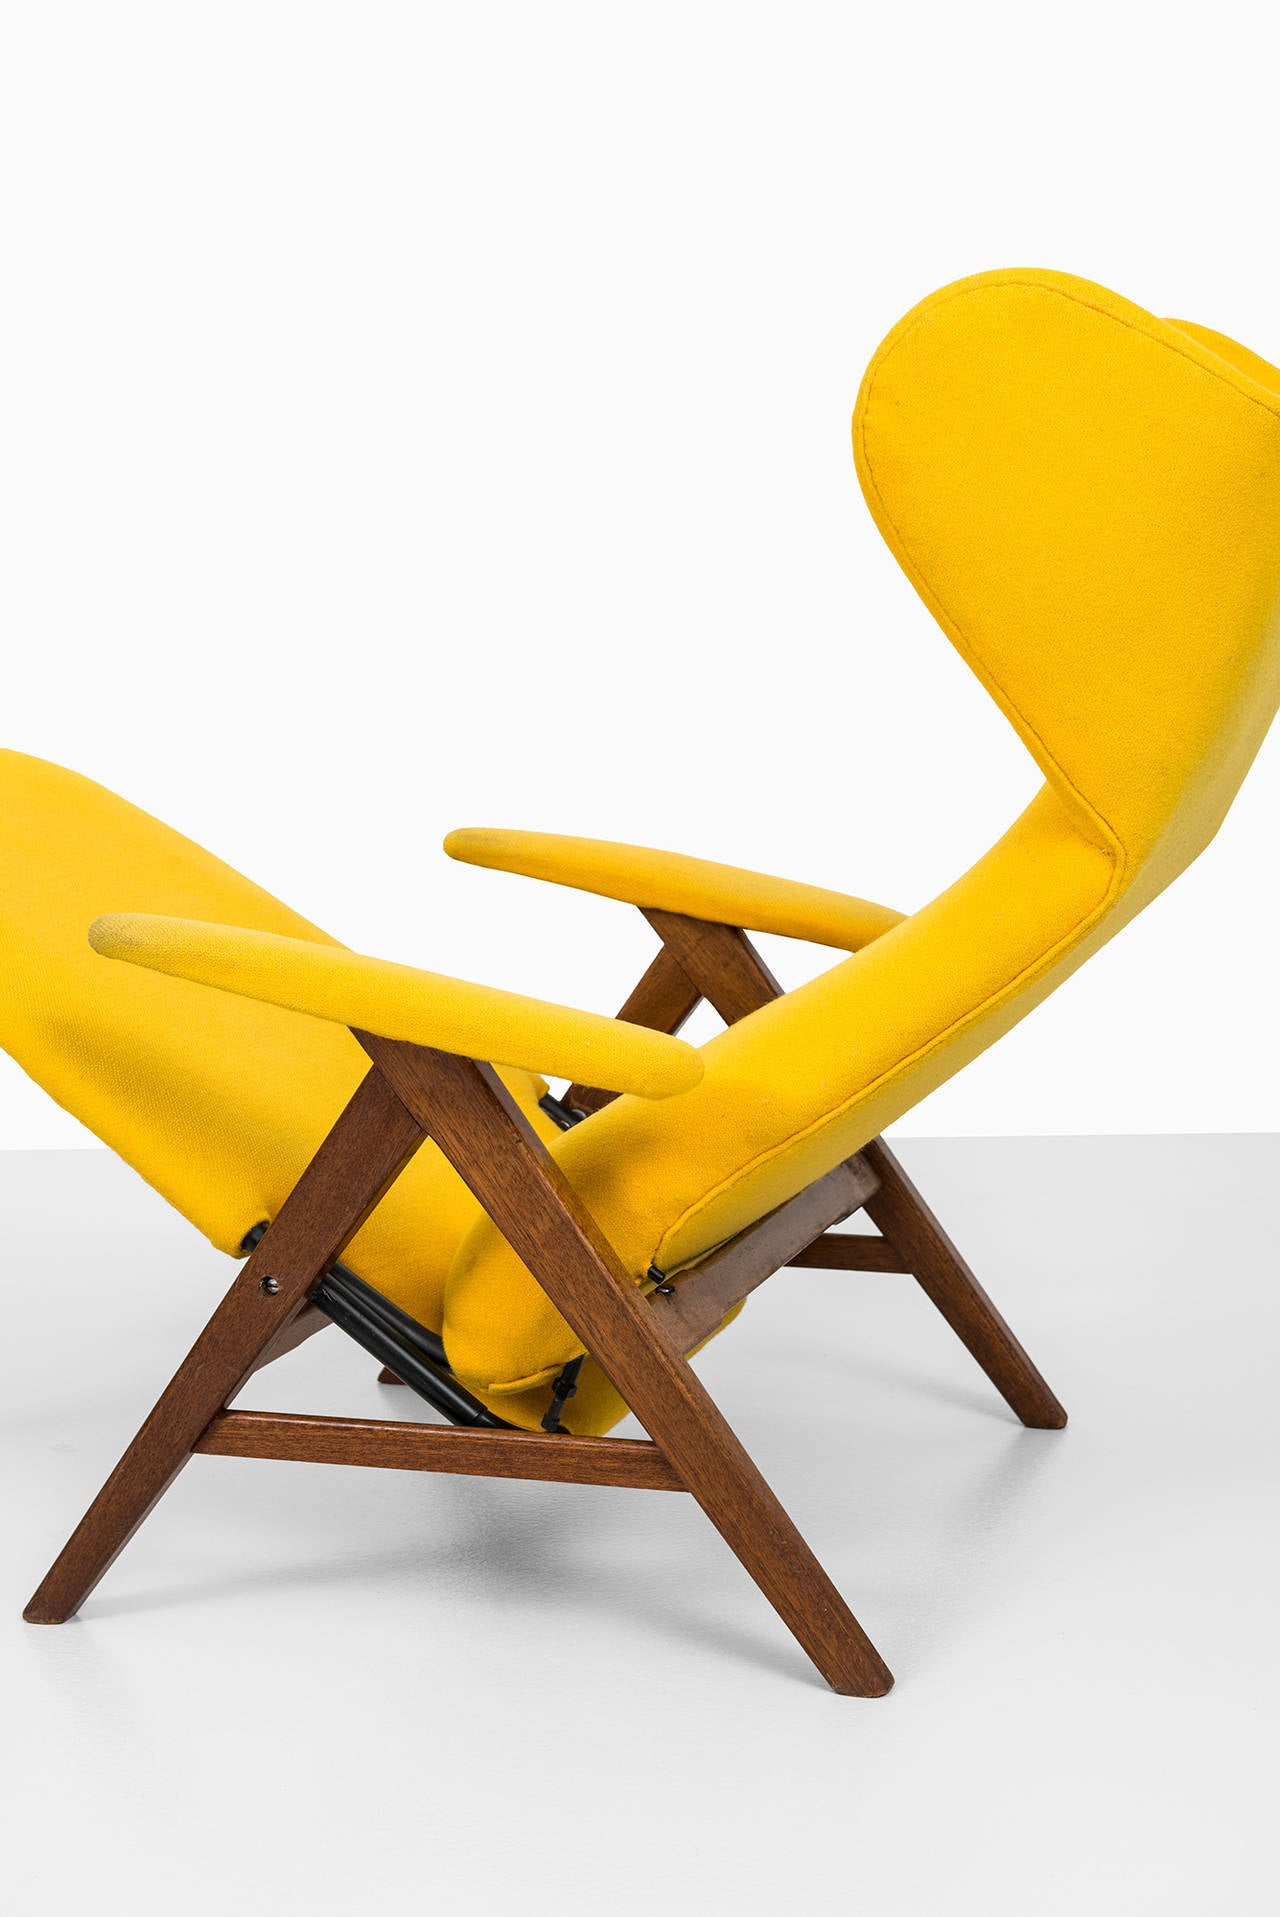 H.W Klein reclining chair by Bramin møbler in Denmark 3